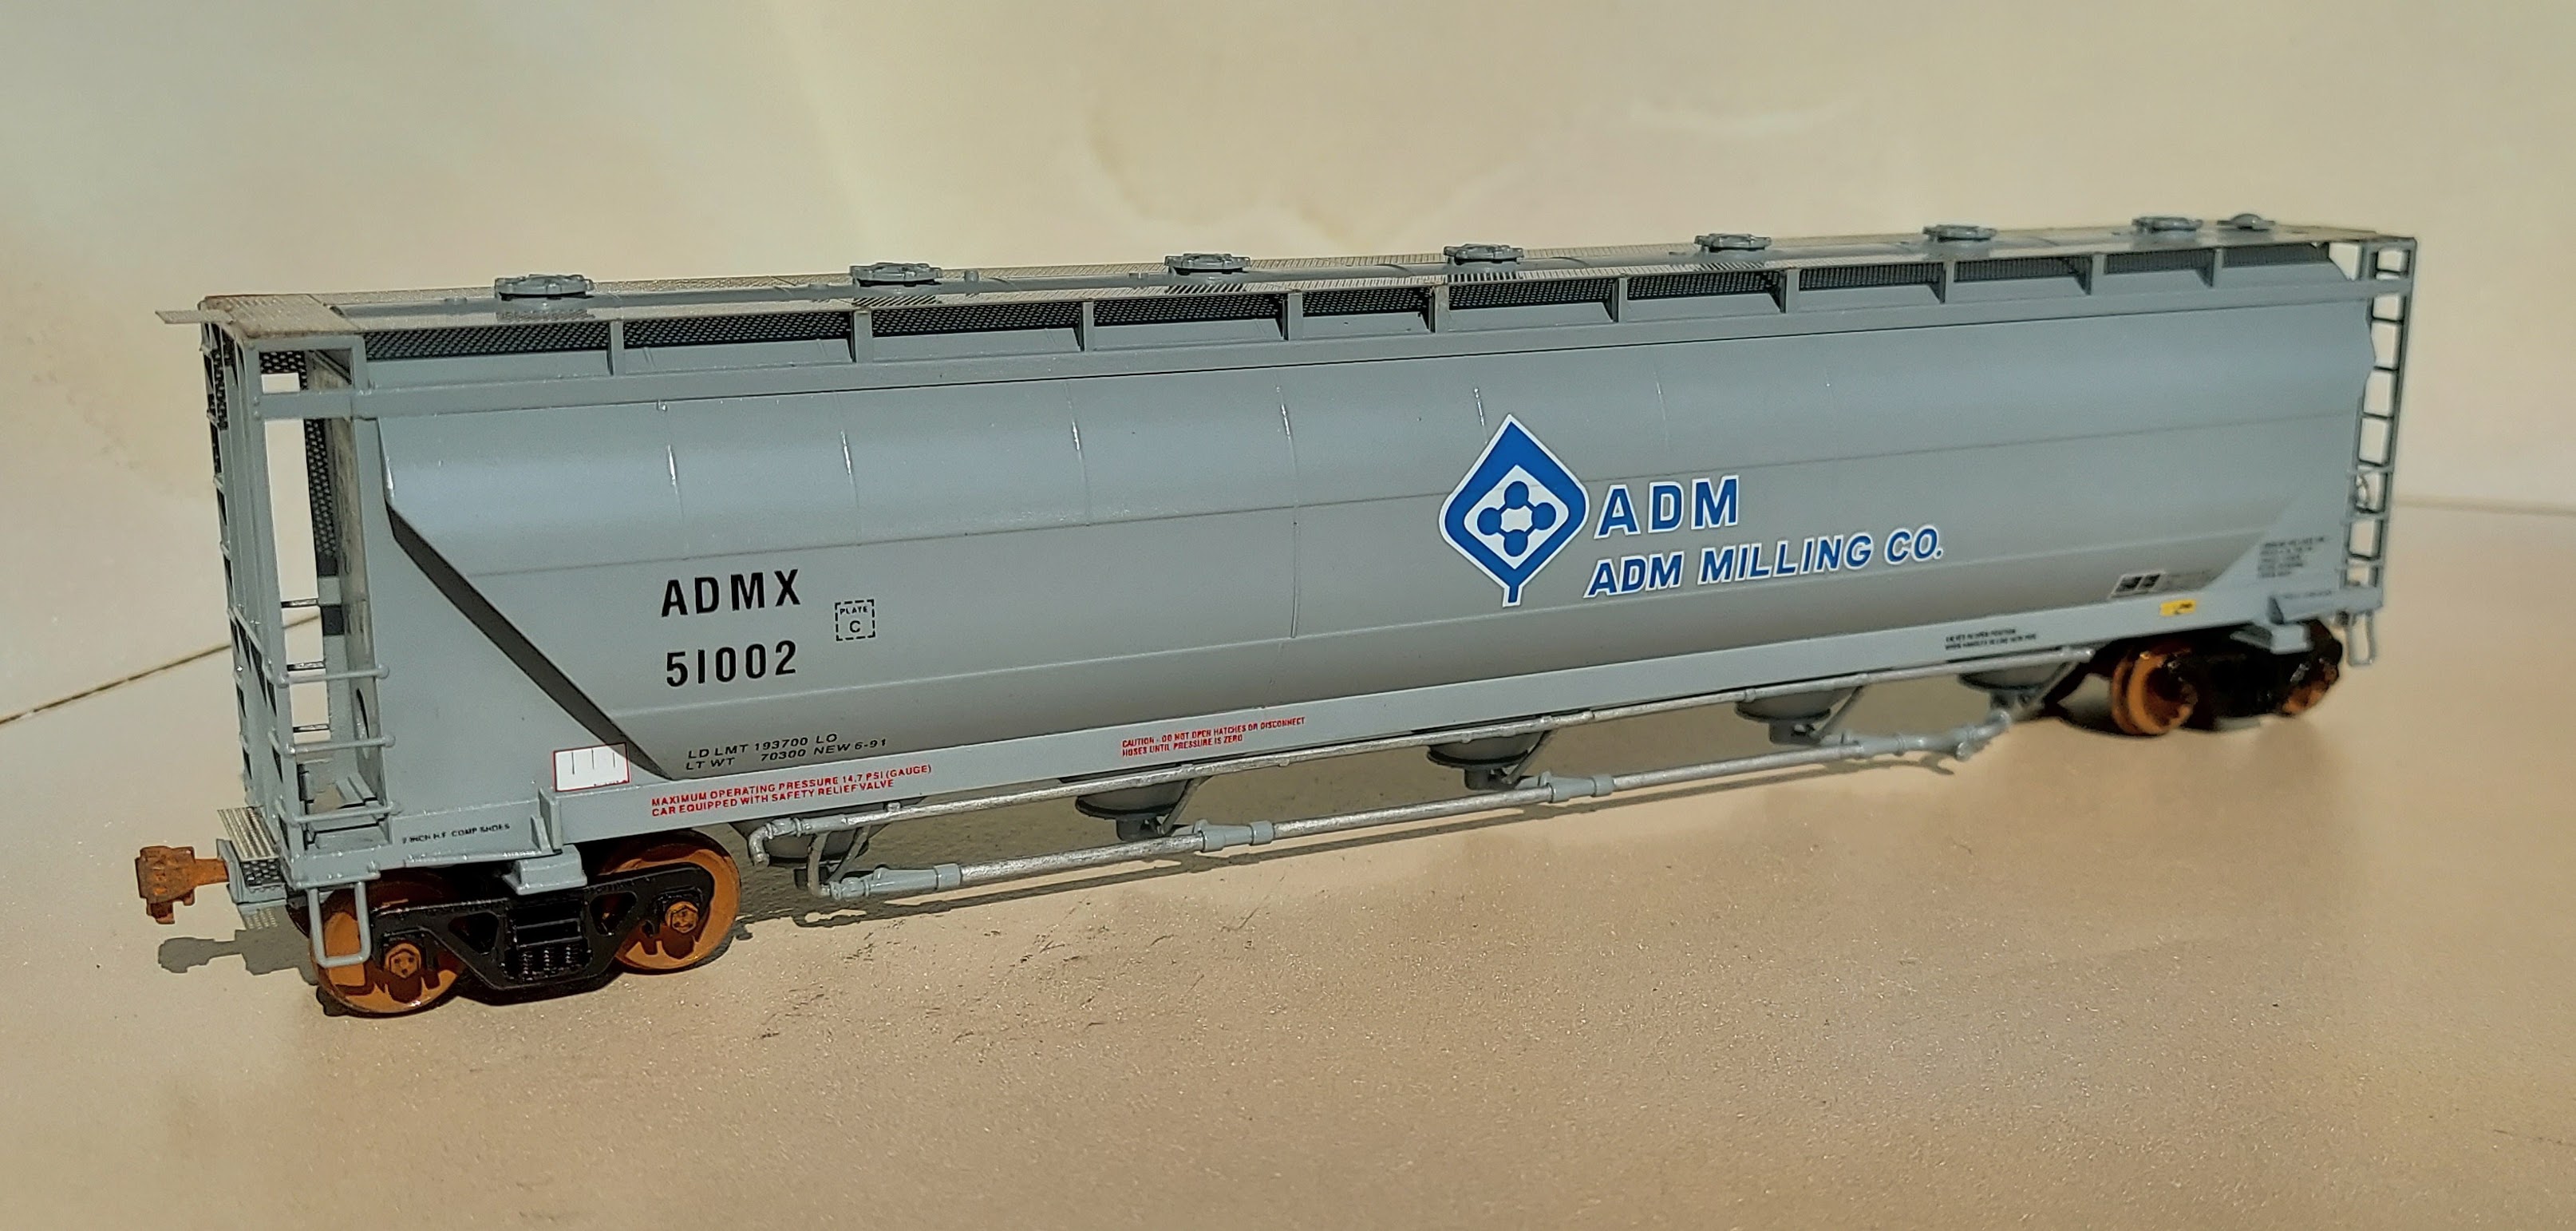 ADMX 51002